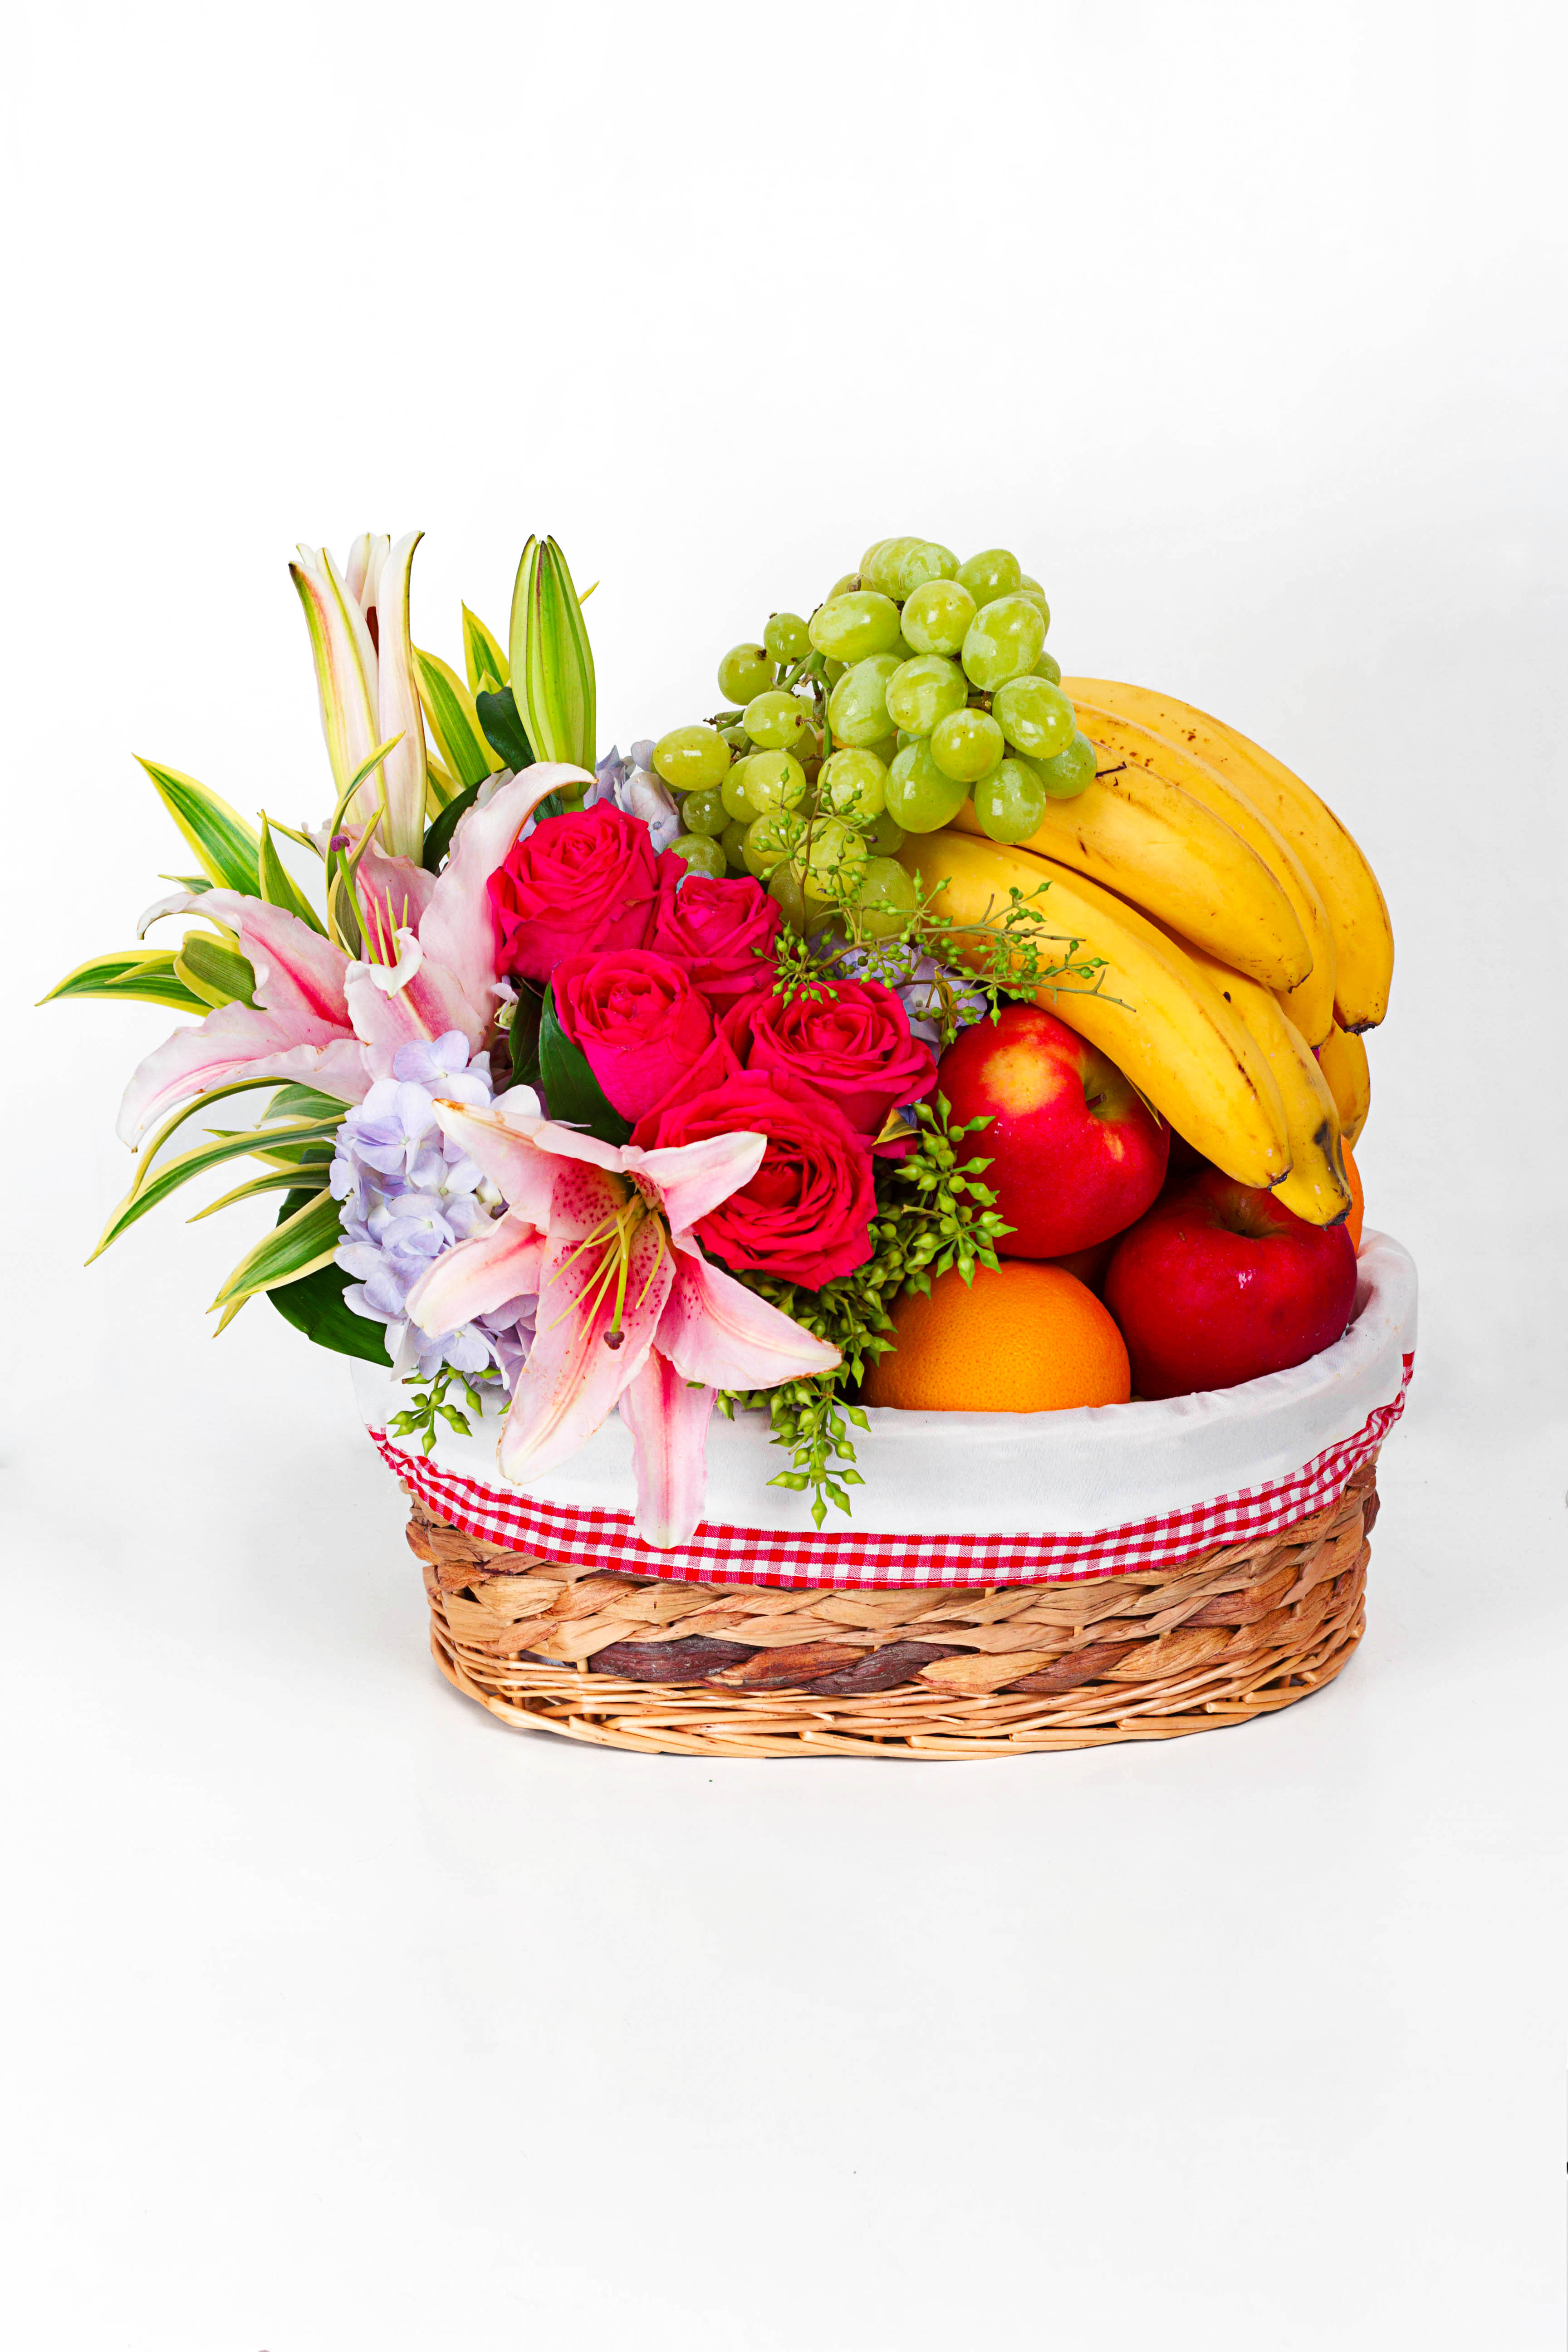 Fruit basket photo